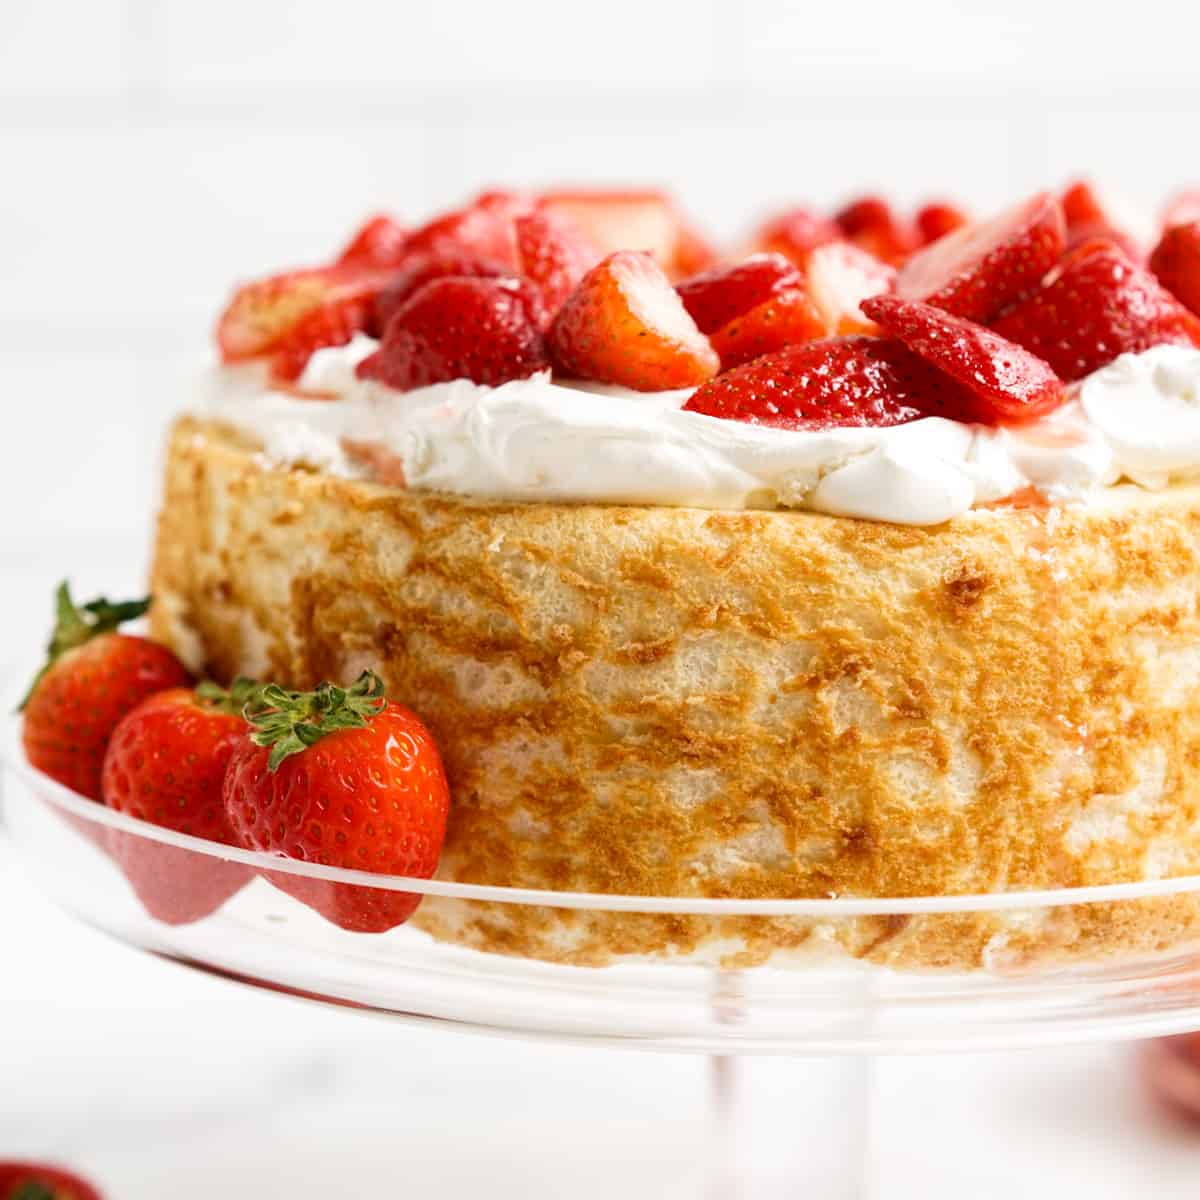 Strawberry Shortcake with Angel Food Cake - Joyous Apron